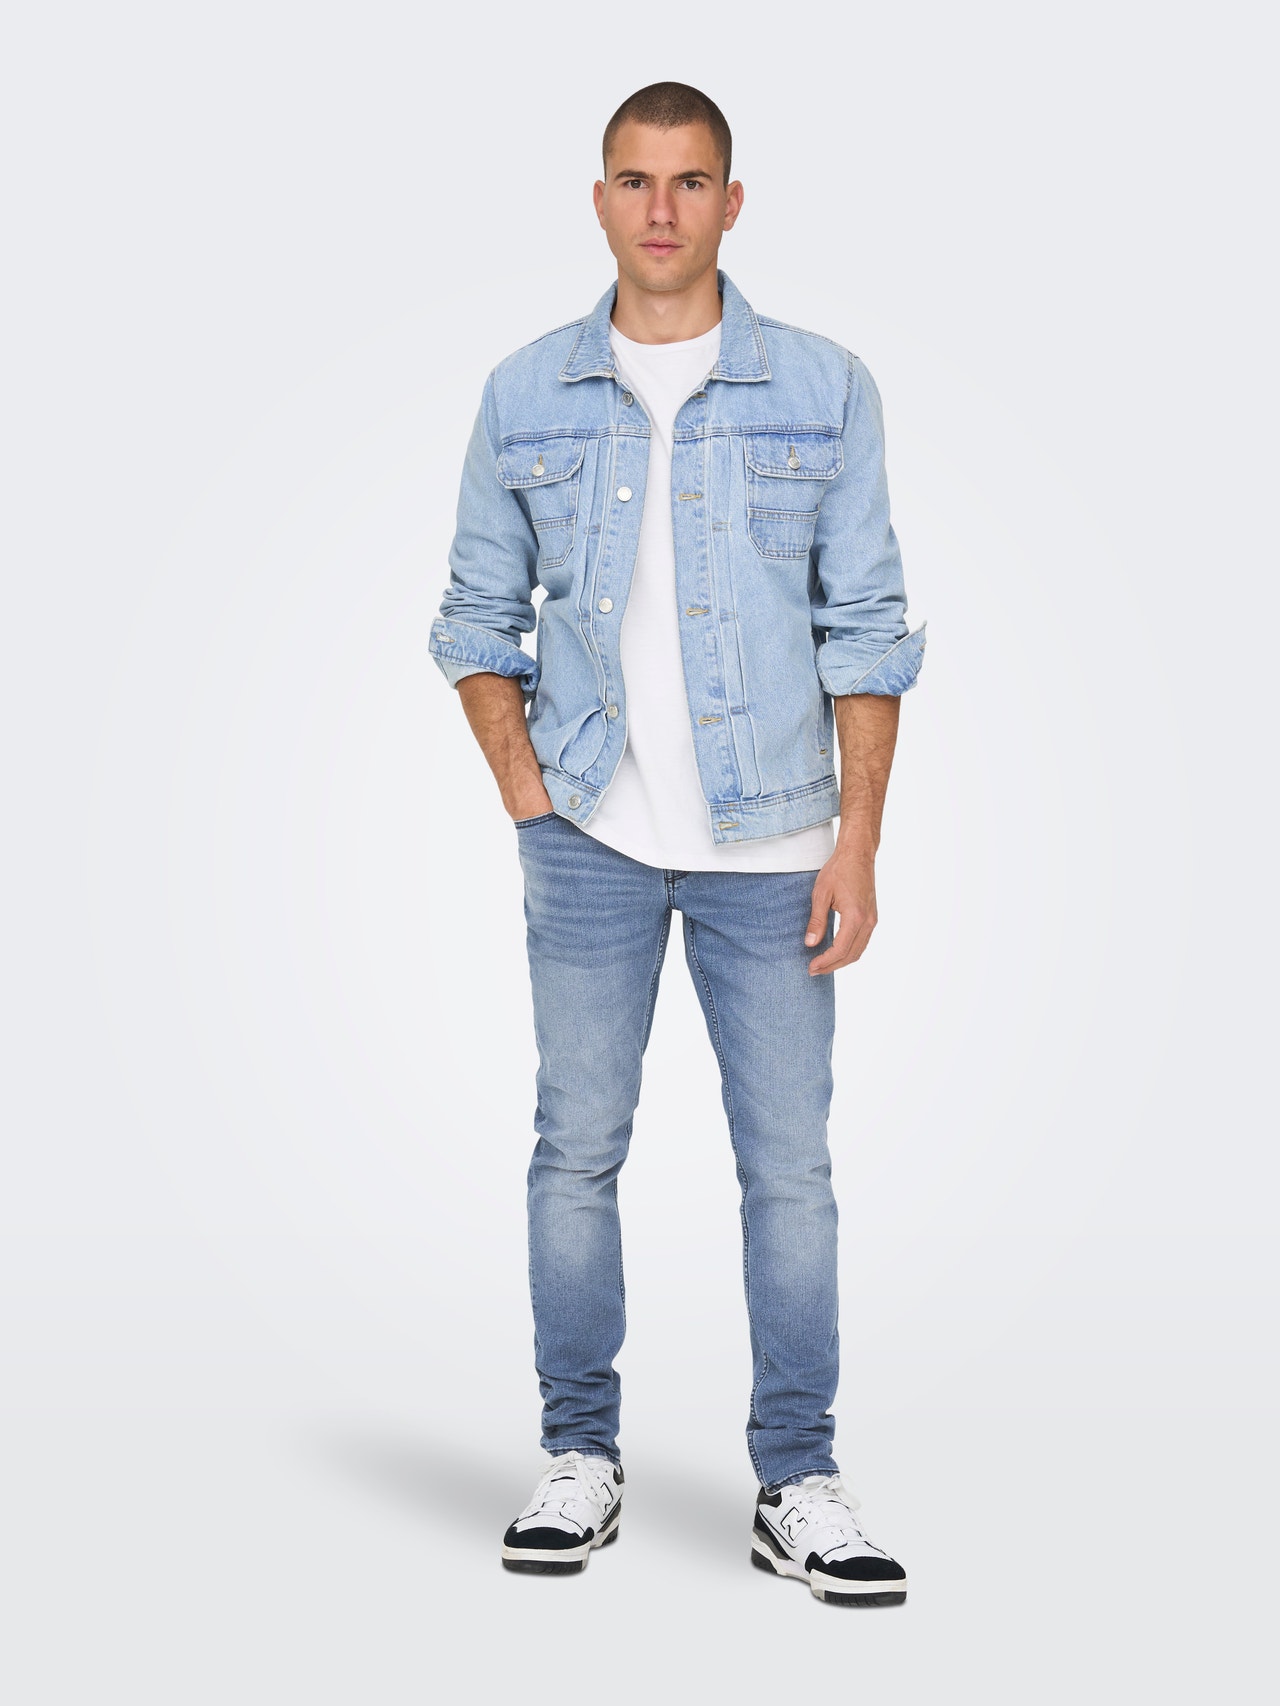 ONLY & SONS Jeans Slim Fit Taille classique -Medium Blue Denim - 22026619